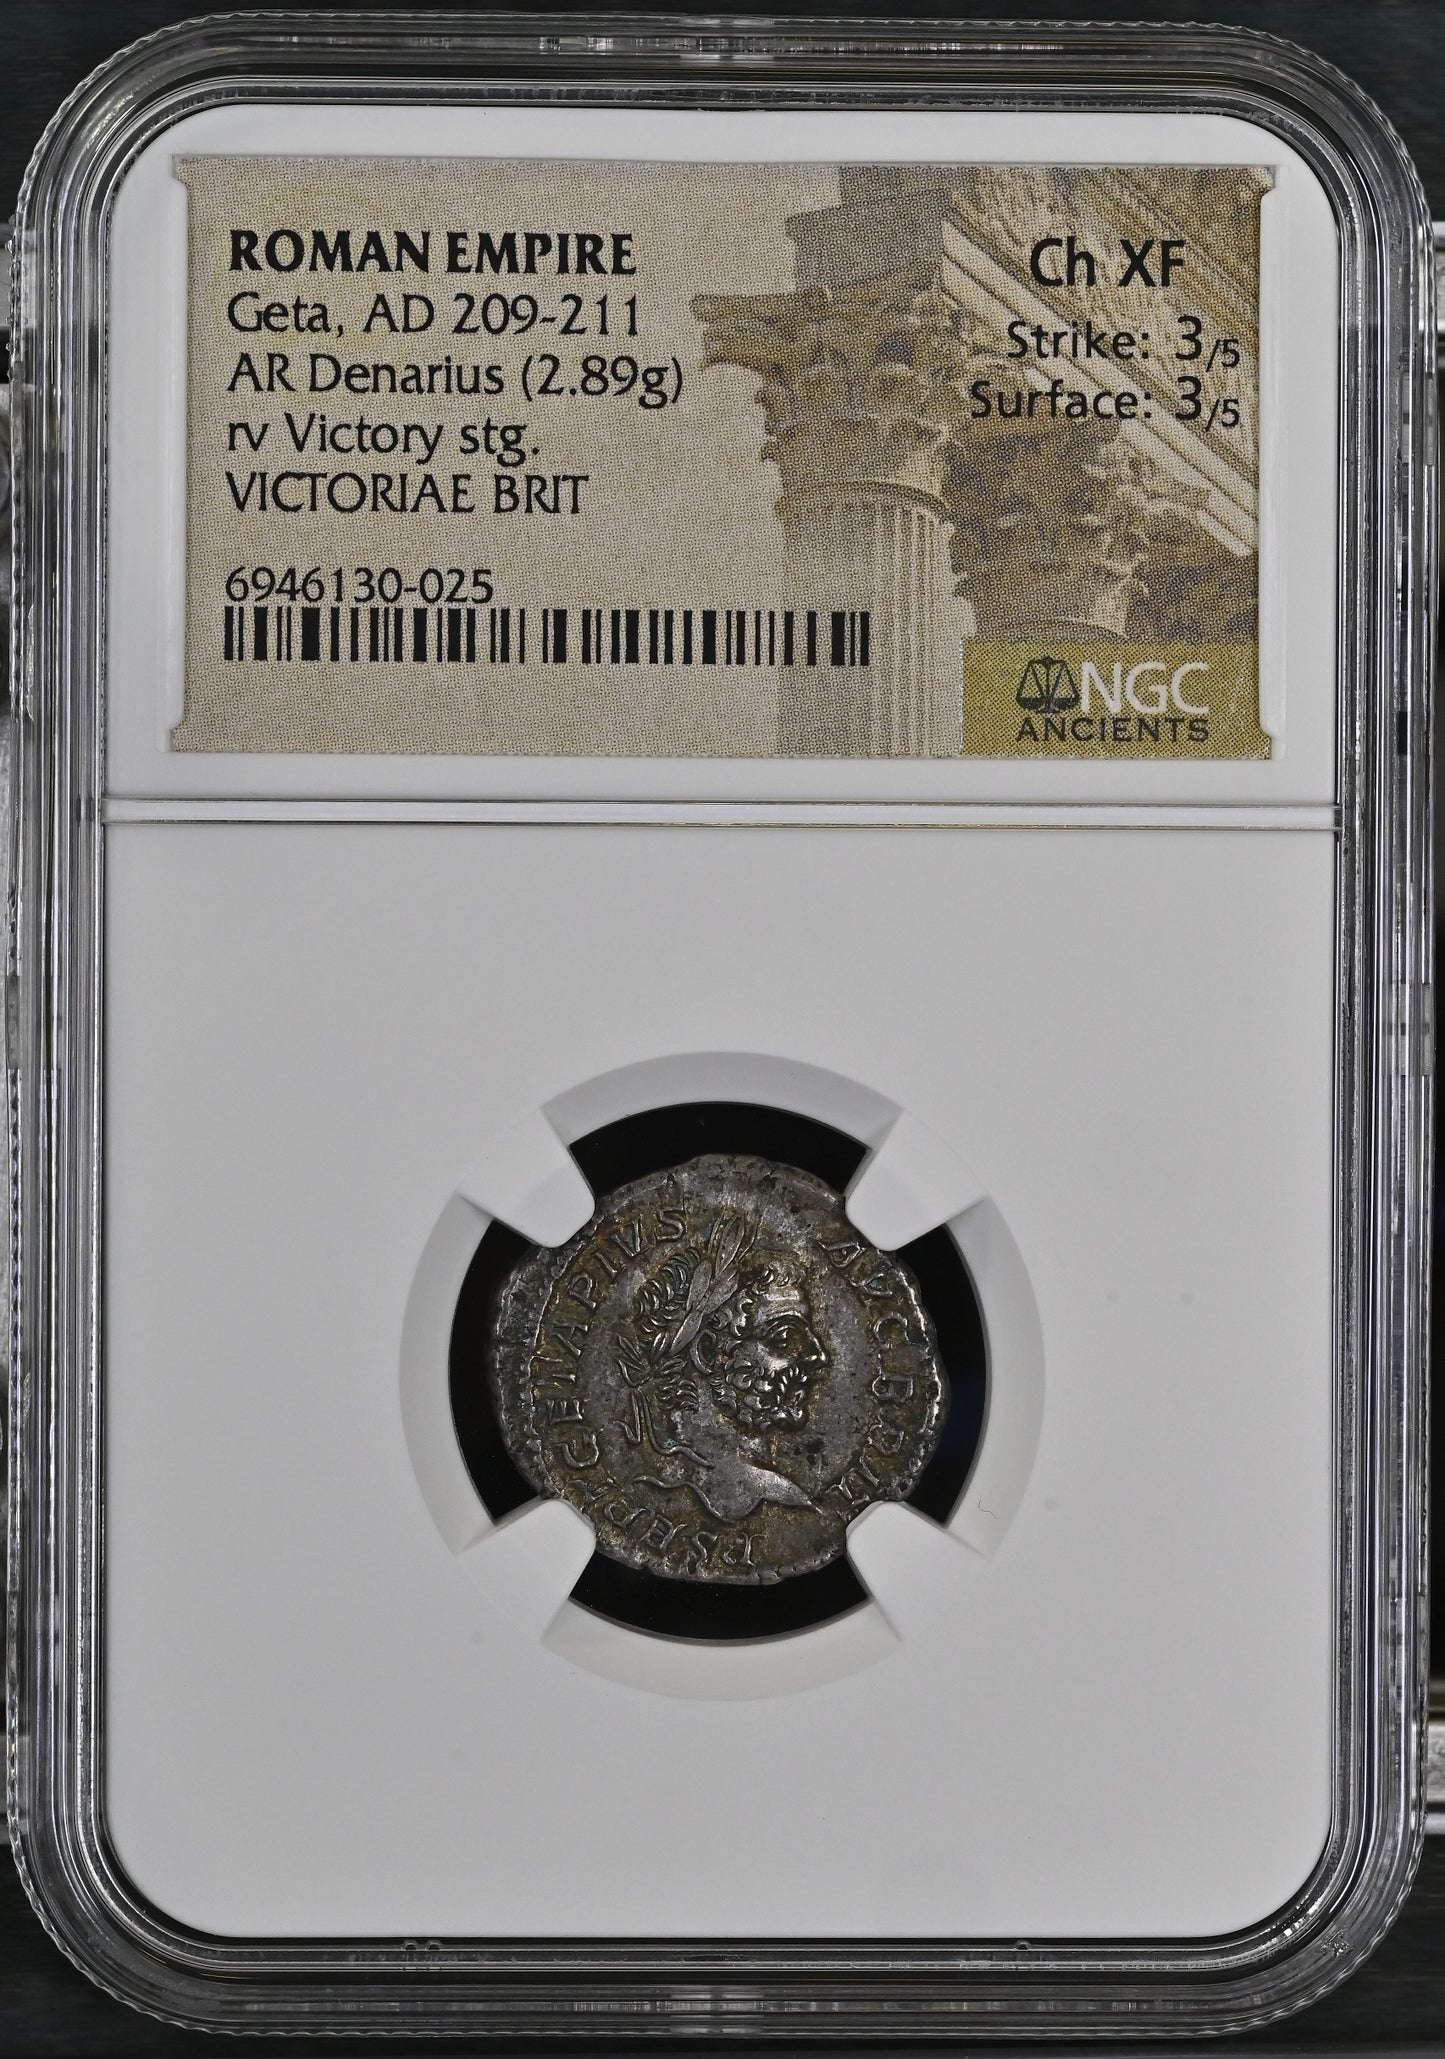 Roman Empire - Geta - Silver Denarius - NGC Ch XF - RIC:92